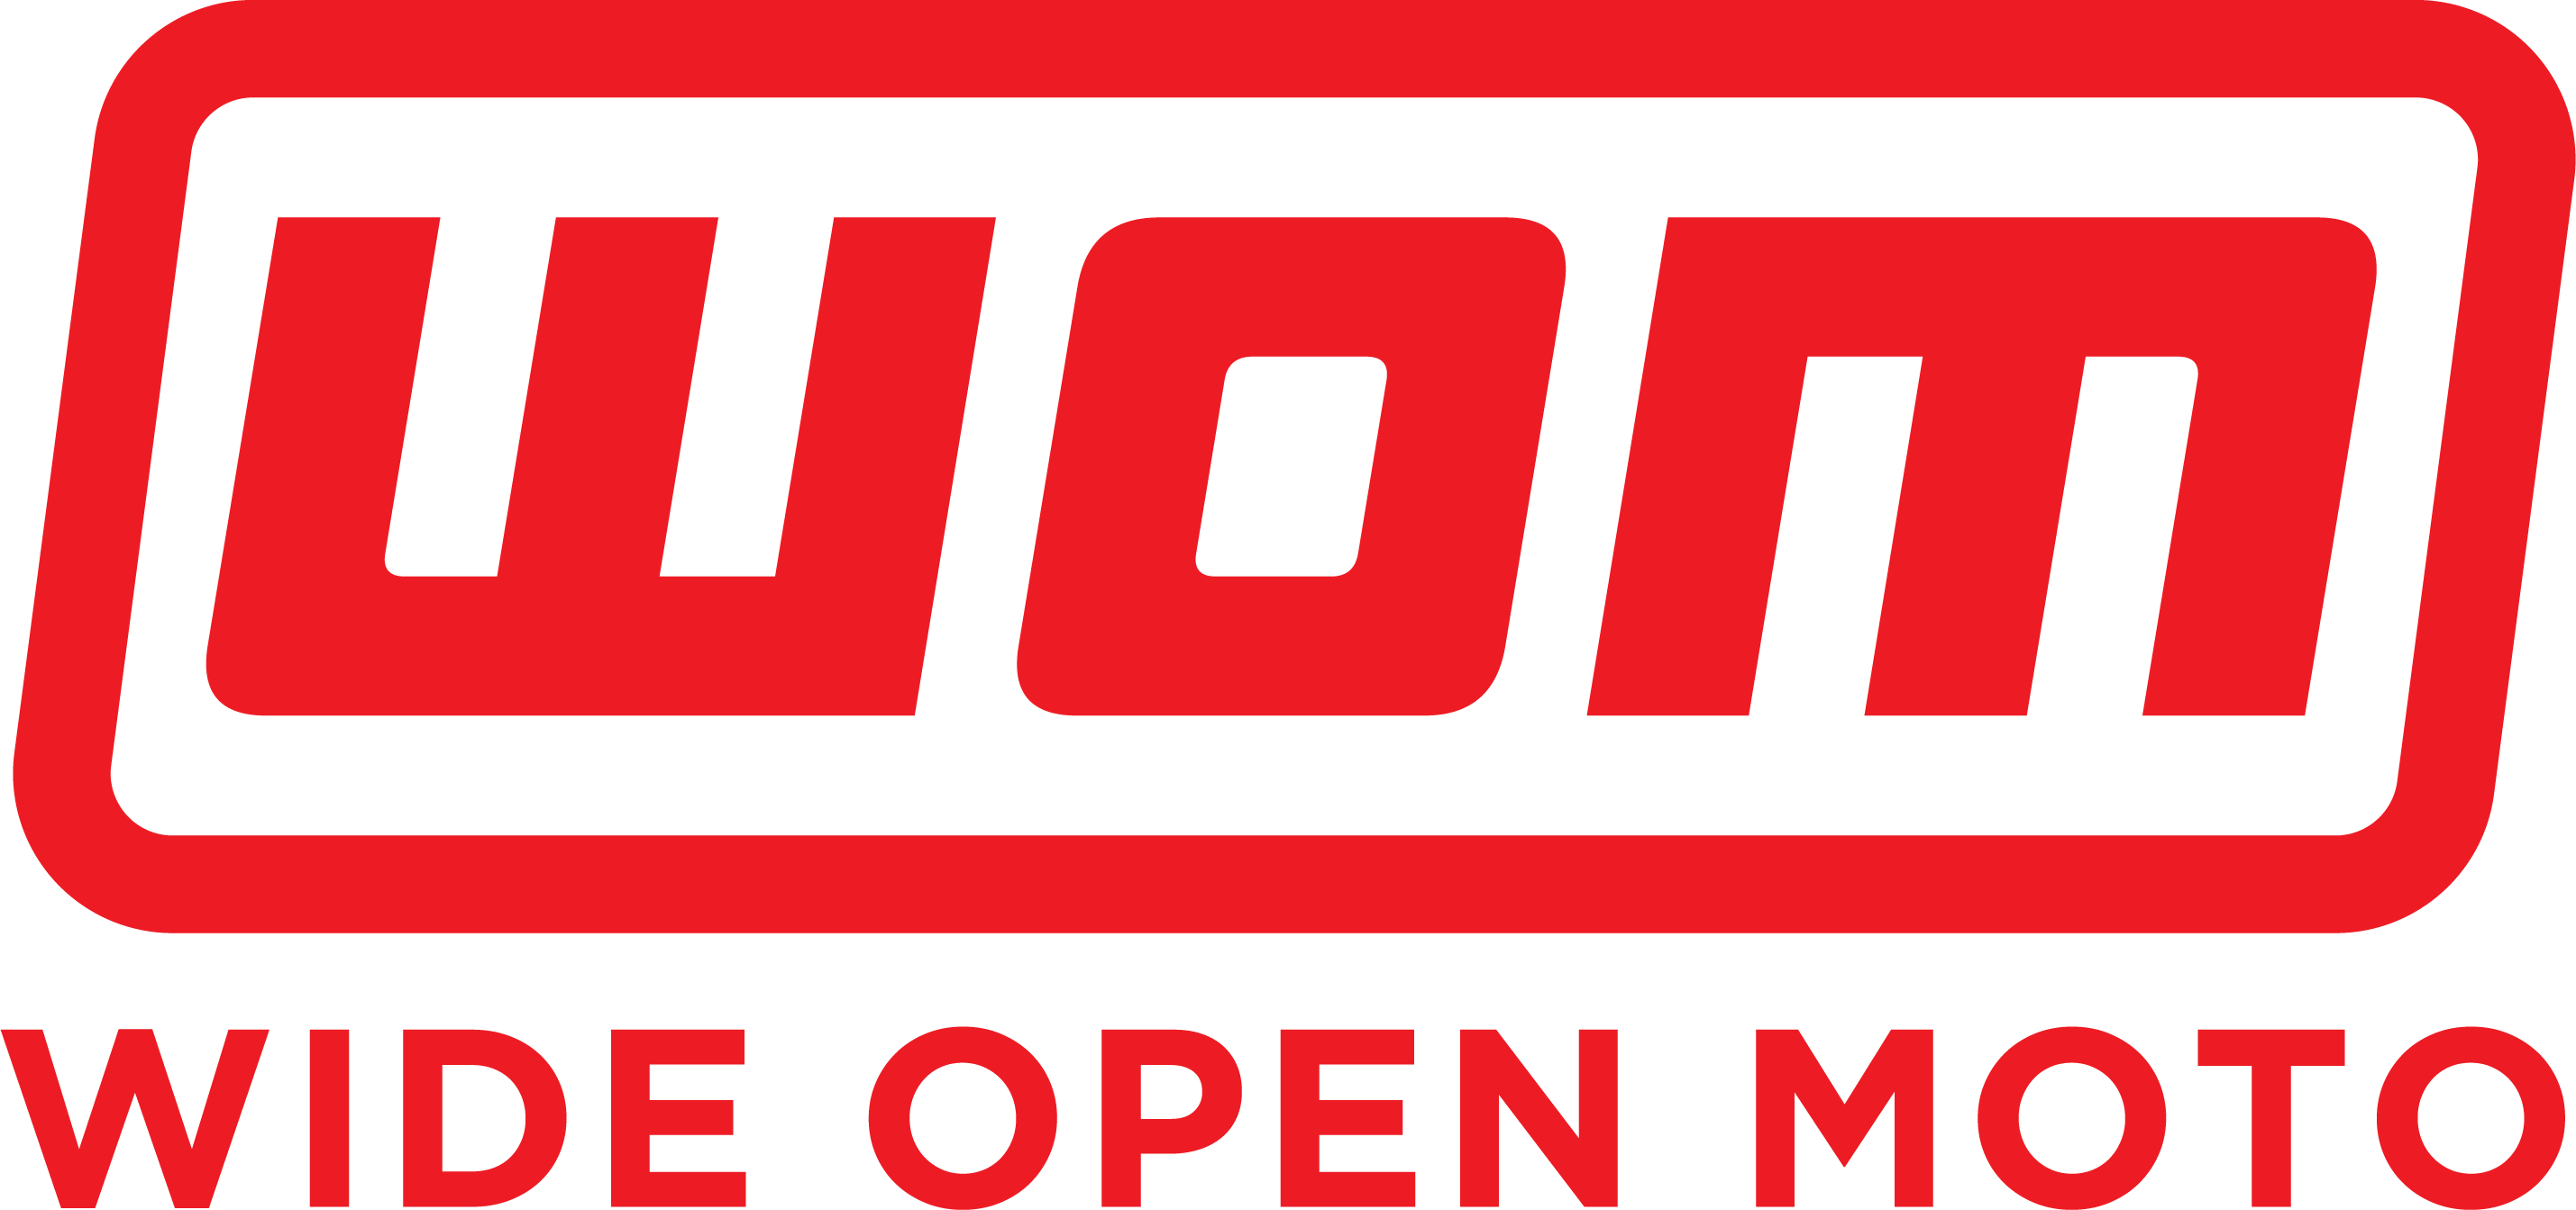 Wide Open Moto